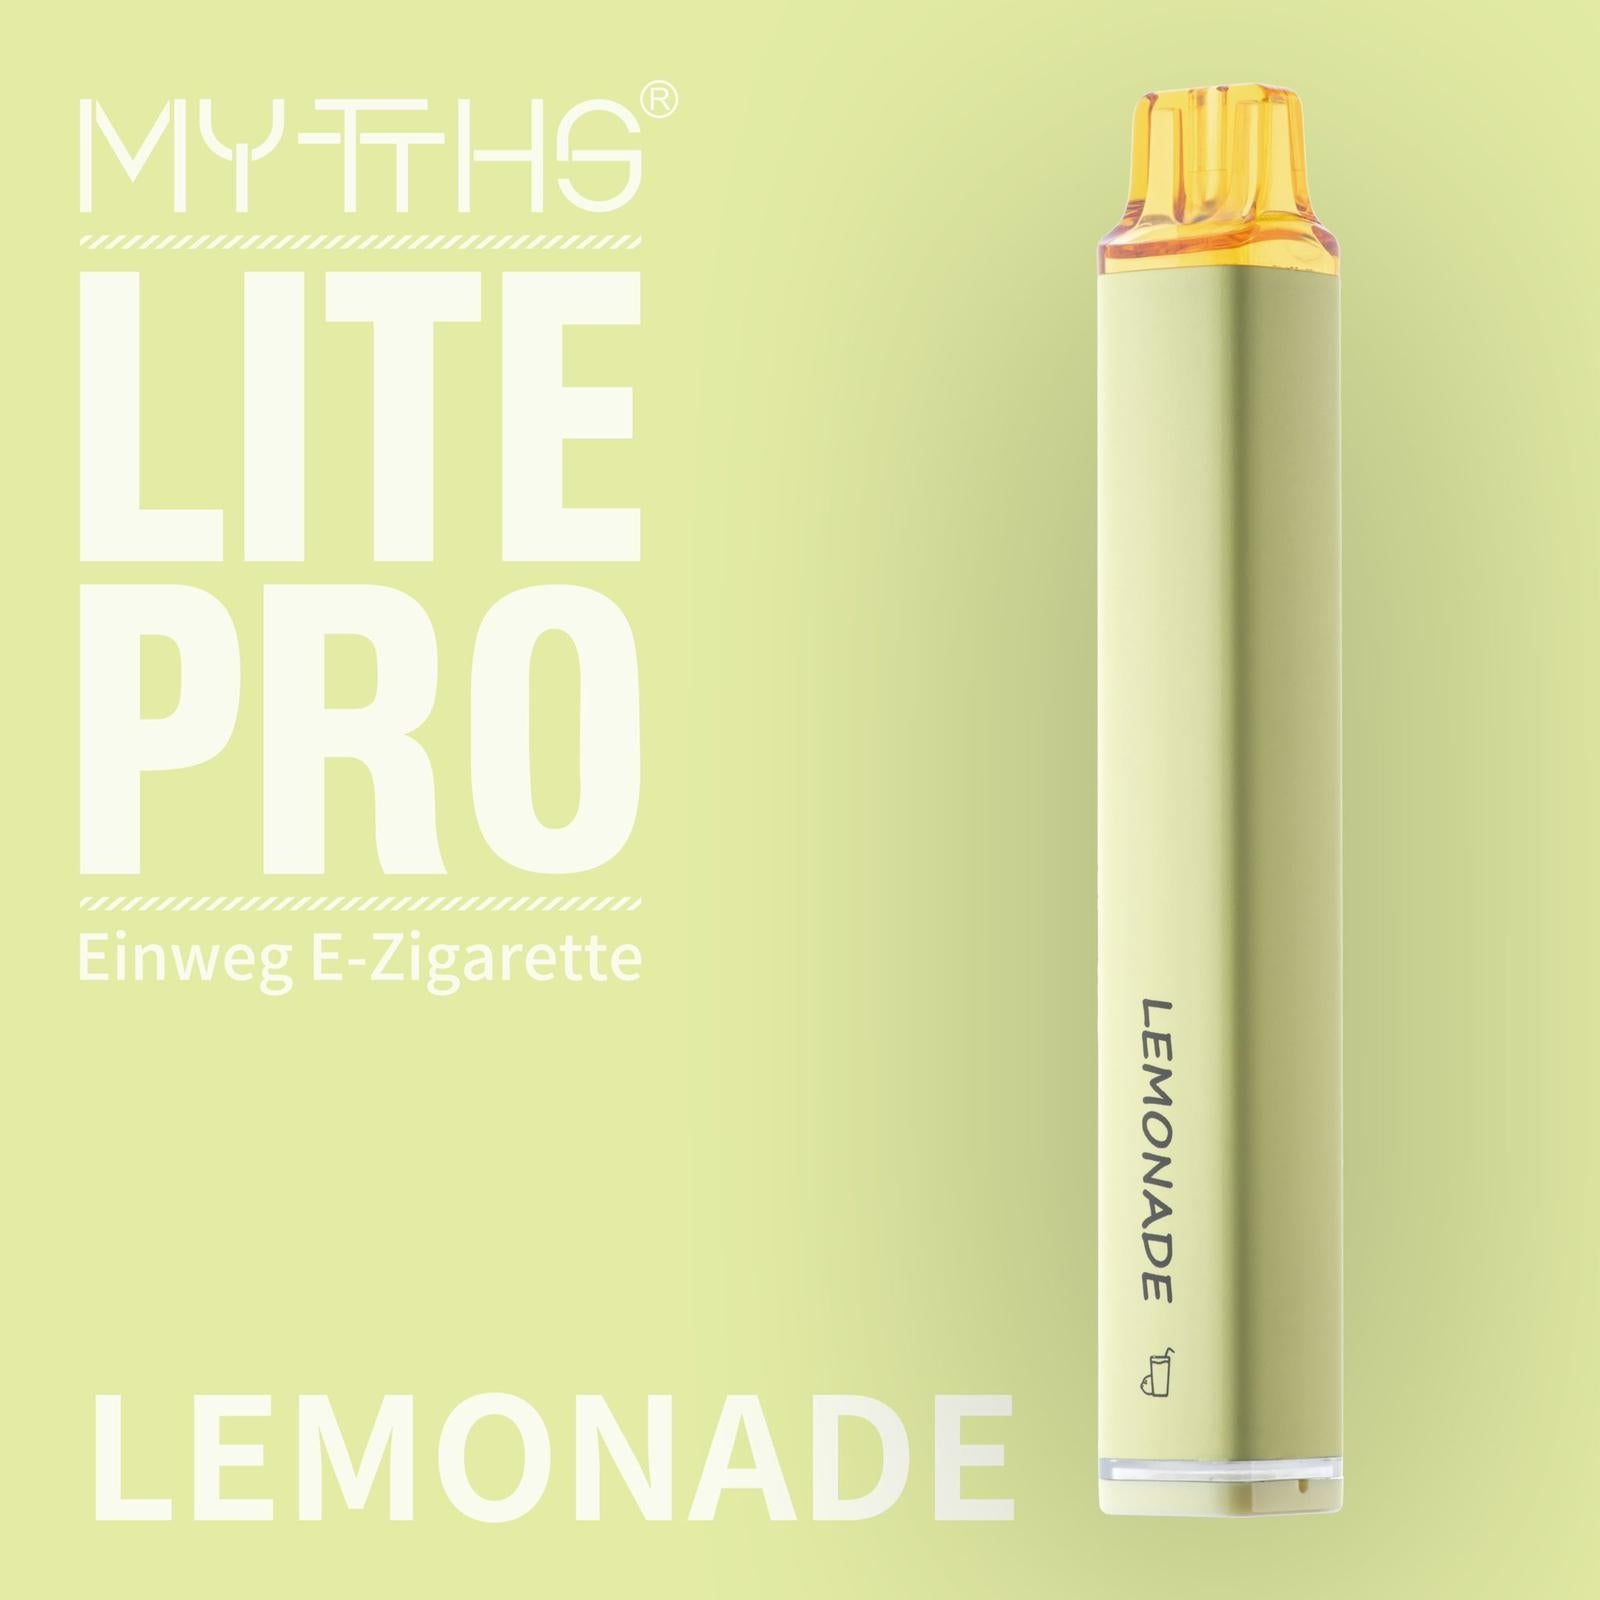 MYTTHS Einweg E-Zigarette - Lemonade - 20mg